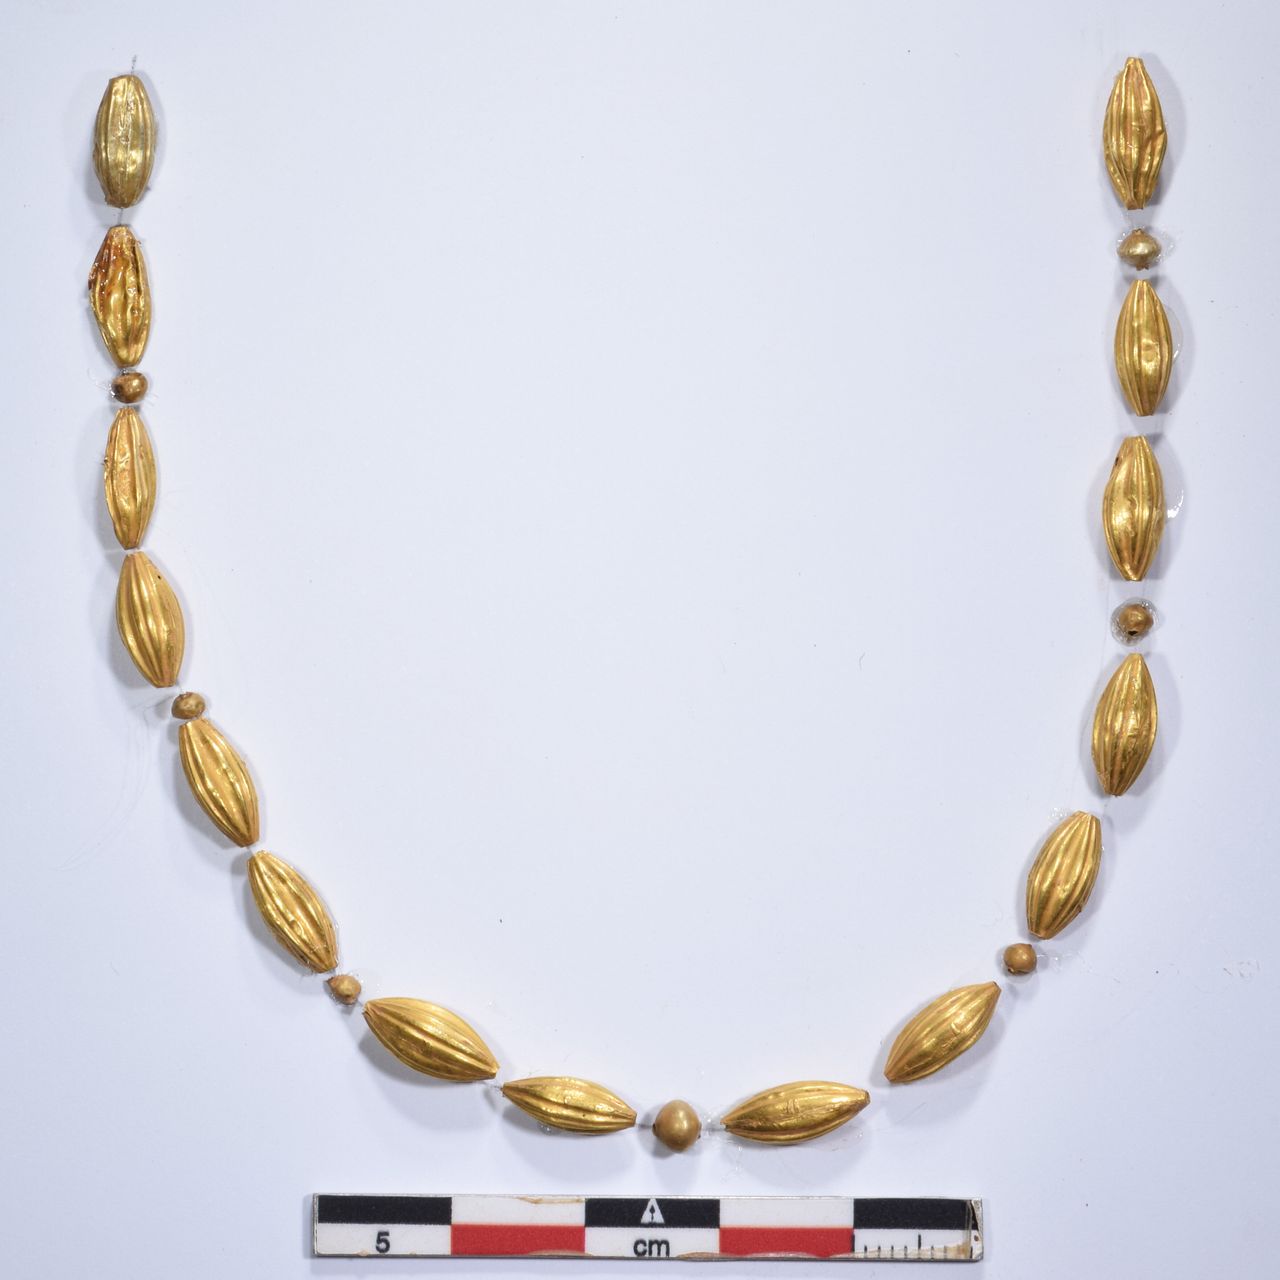 Χρυσό περιδέραιο από τον κιβωτιόσχημο τάφο της Υστερομινωικής περιόδου ΙΙ 